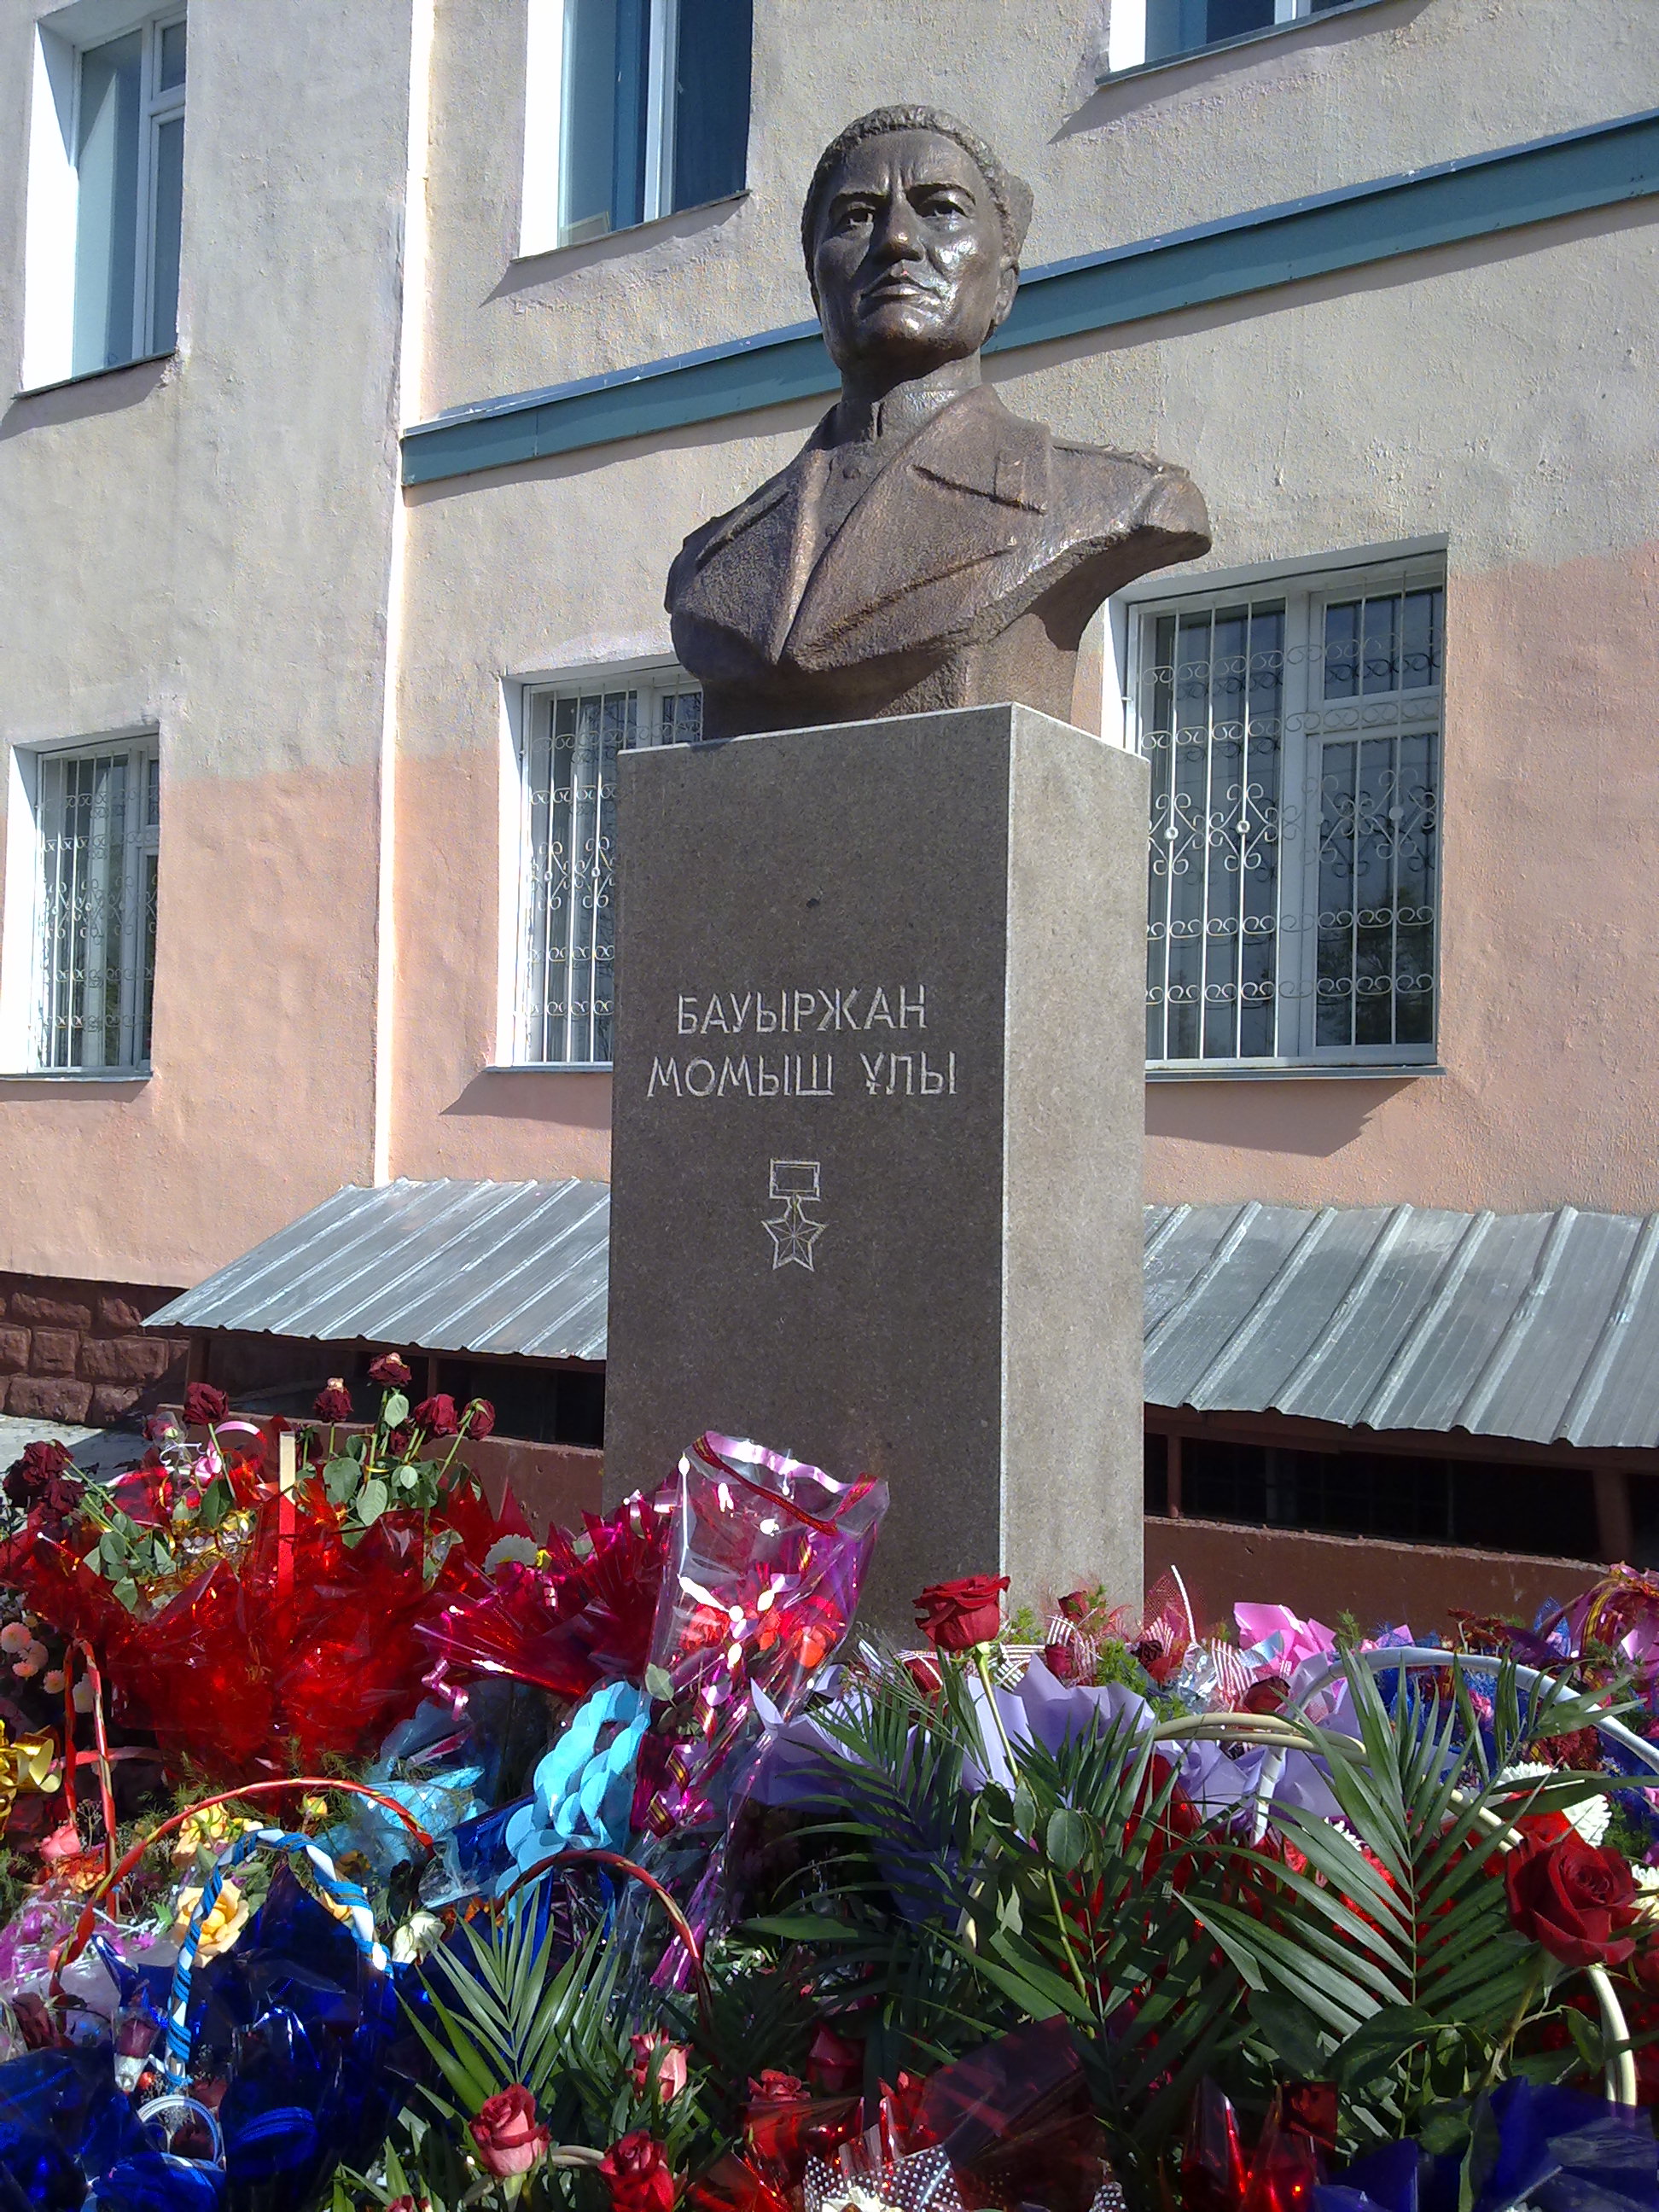 г. Талгар. Памятник Герою Советского Союза Бауыржану Момыш-улы был открыт в 2010 году на территории колледжа «Агробизнеса и менеджмента».